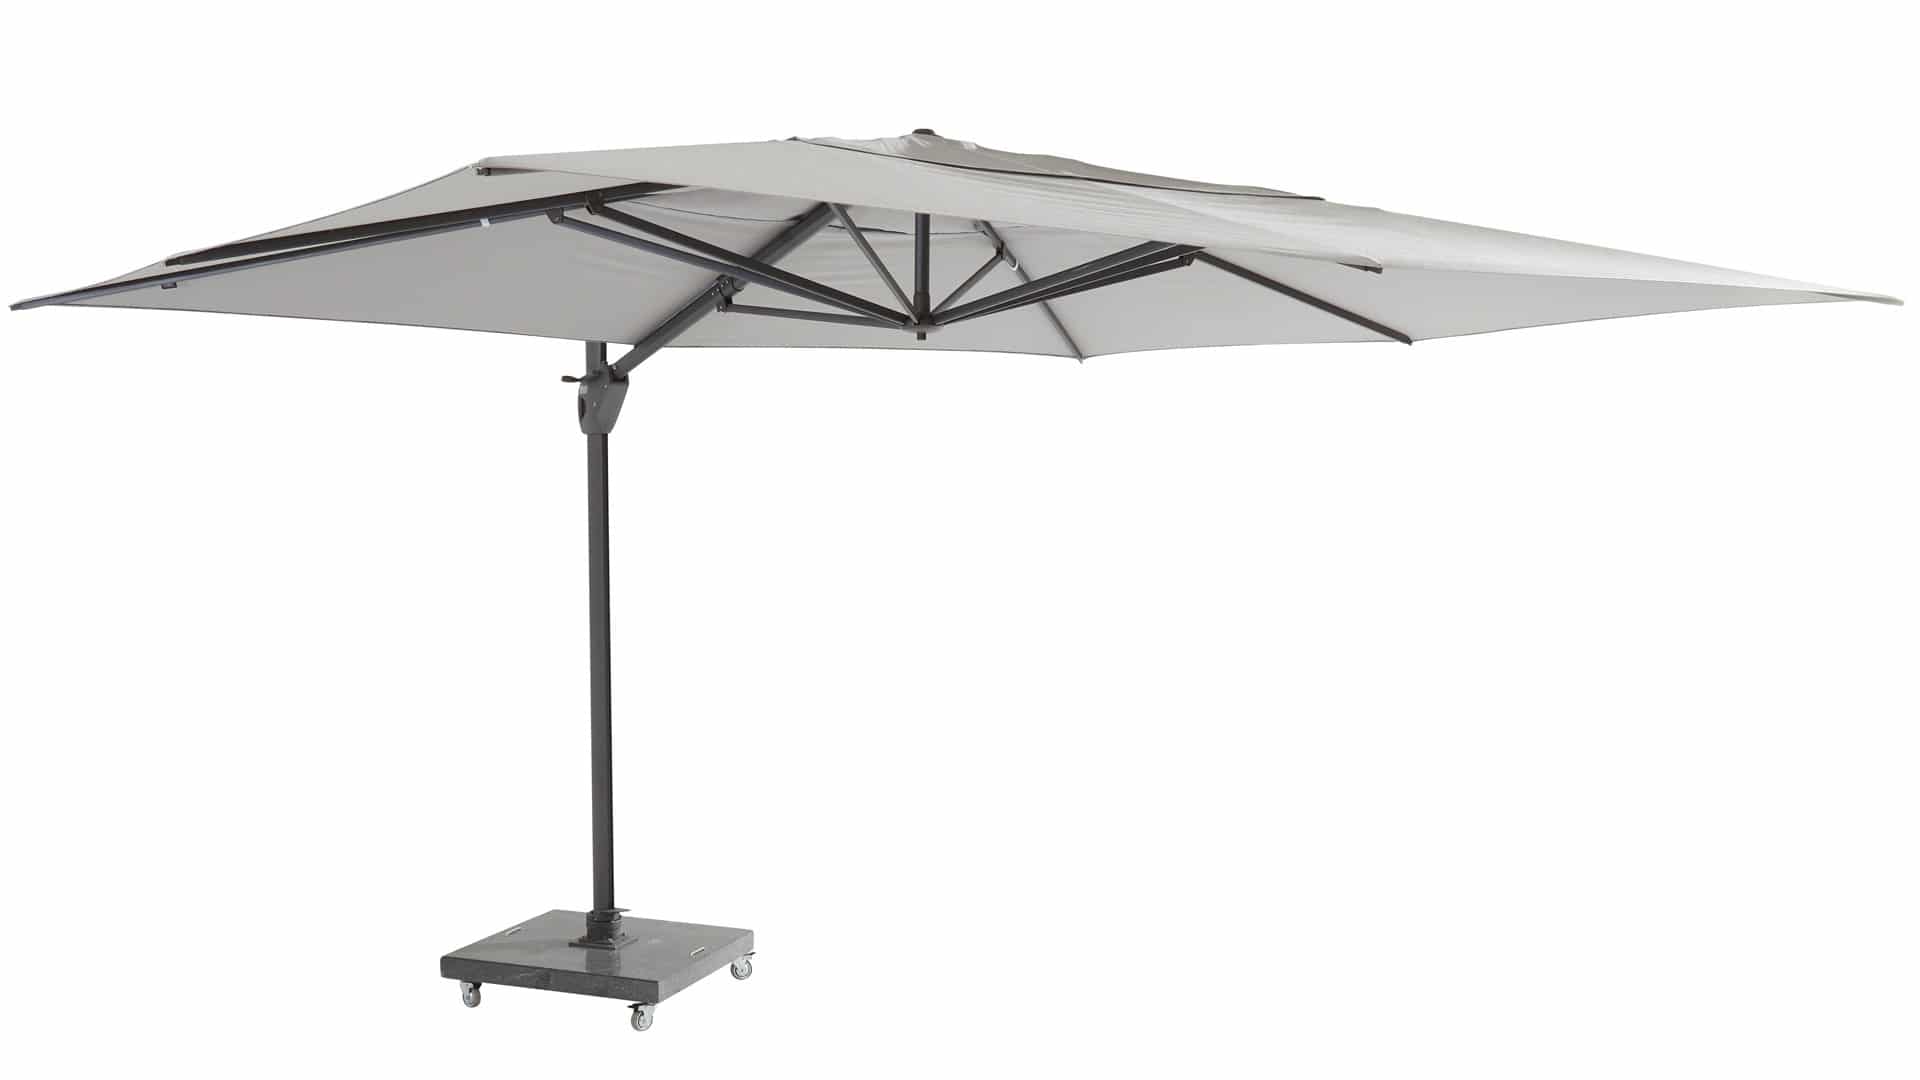 Vertrappen alledaags Fluisteren 4 Seasons Outdoor Hacienda parasol 300 x 400 cm mid-grey, antraciet frame  kopen? | Latour Tuinmeubelen